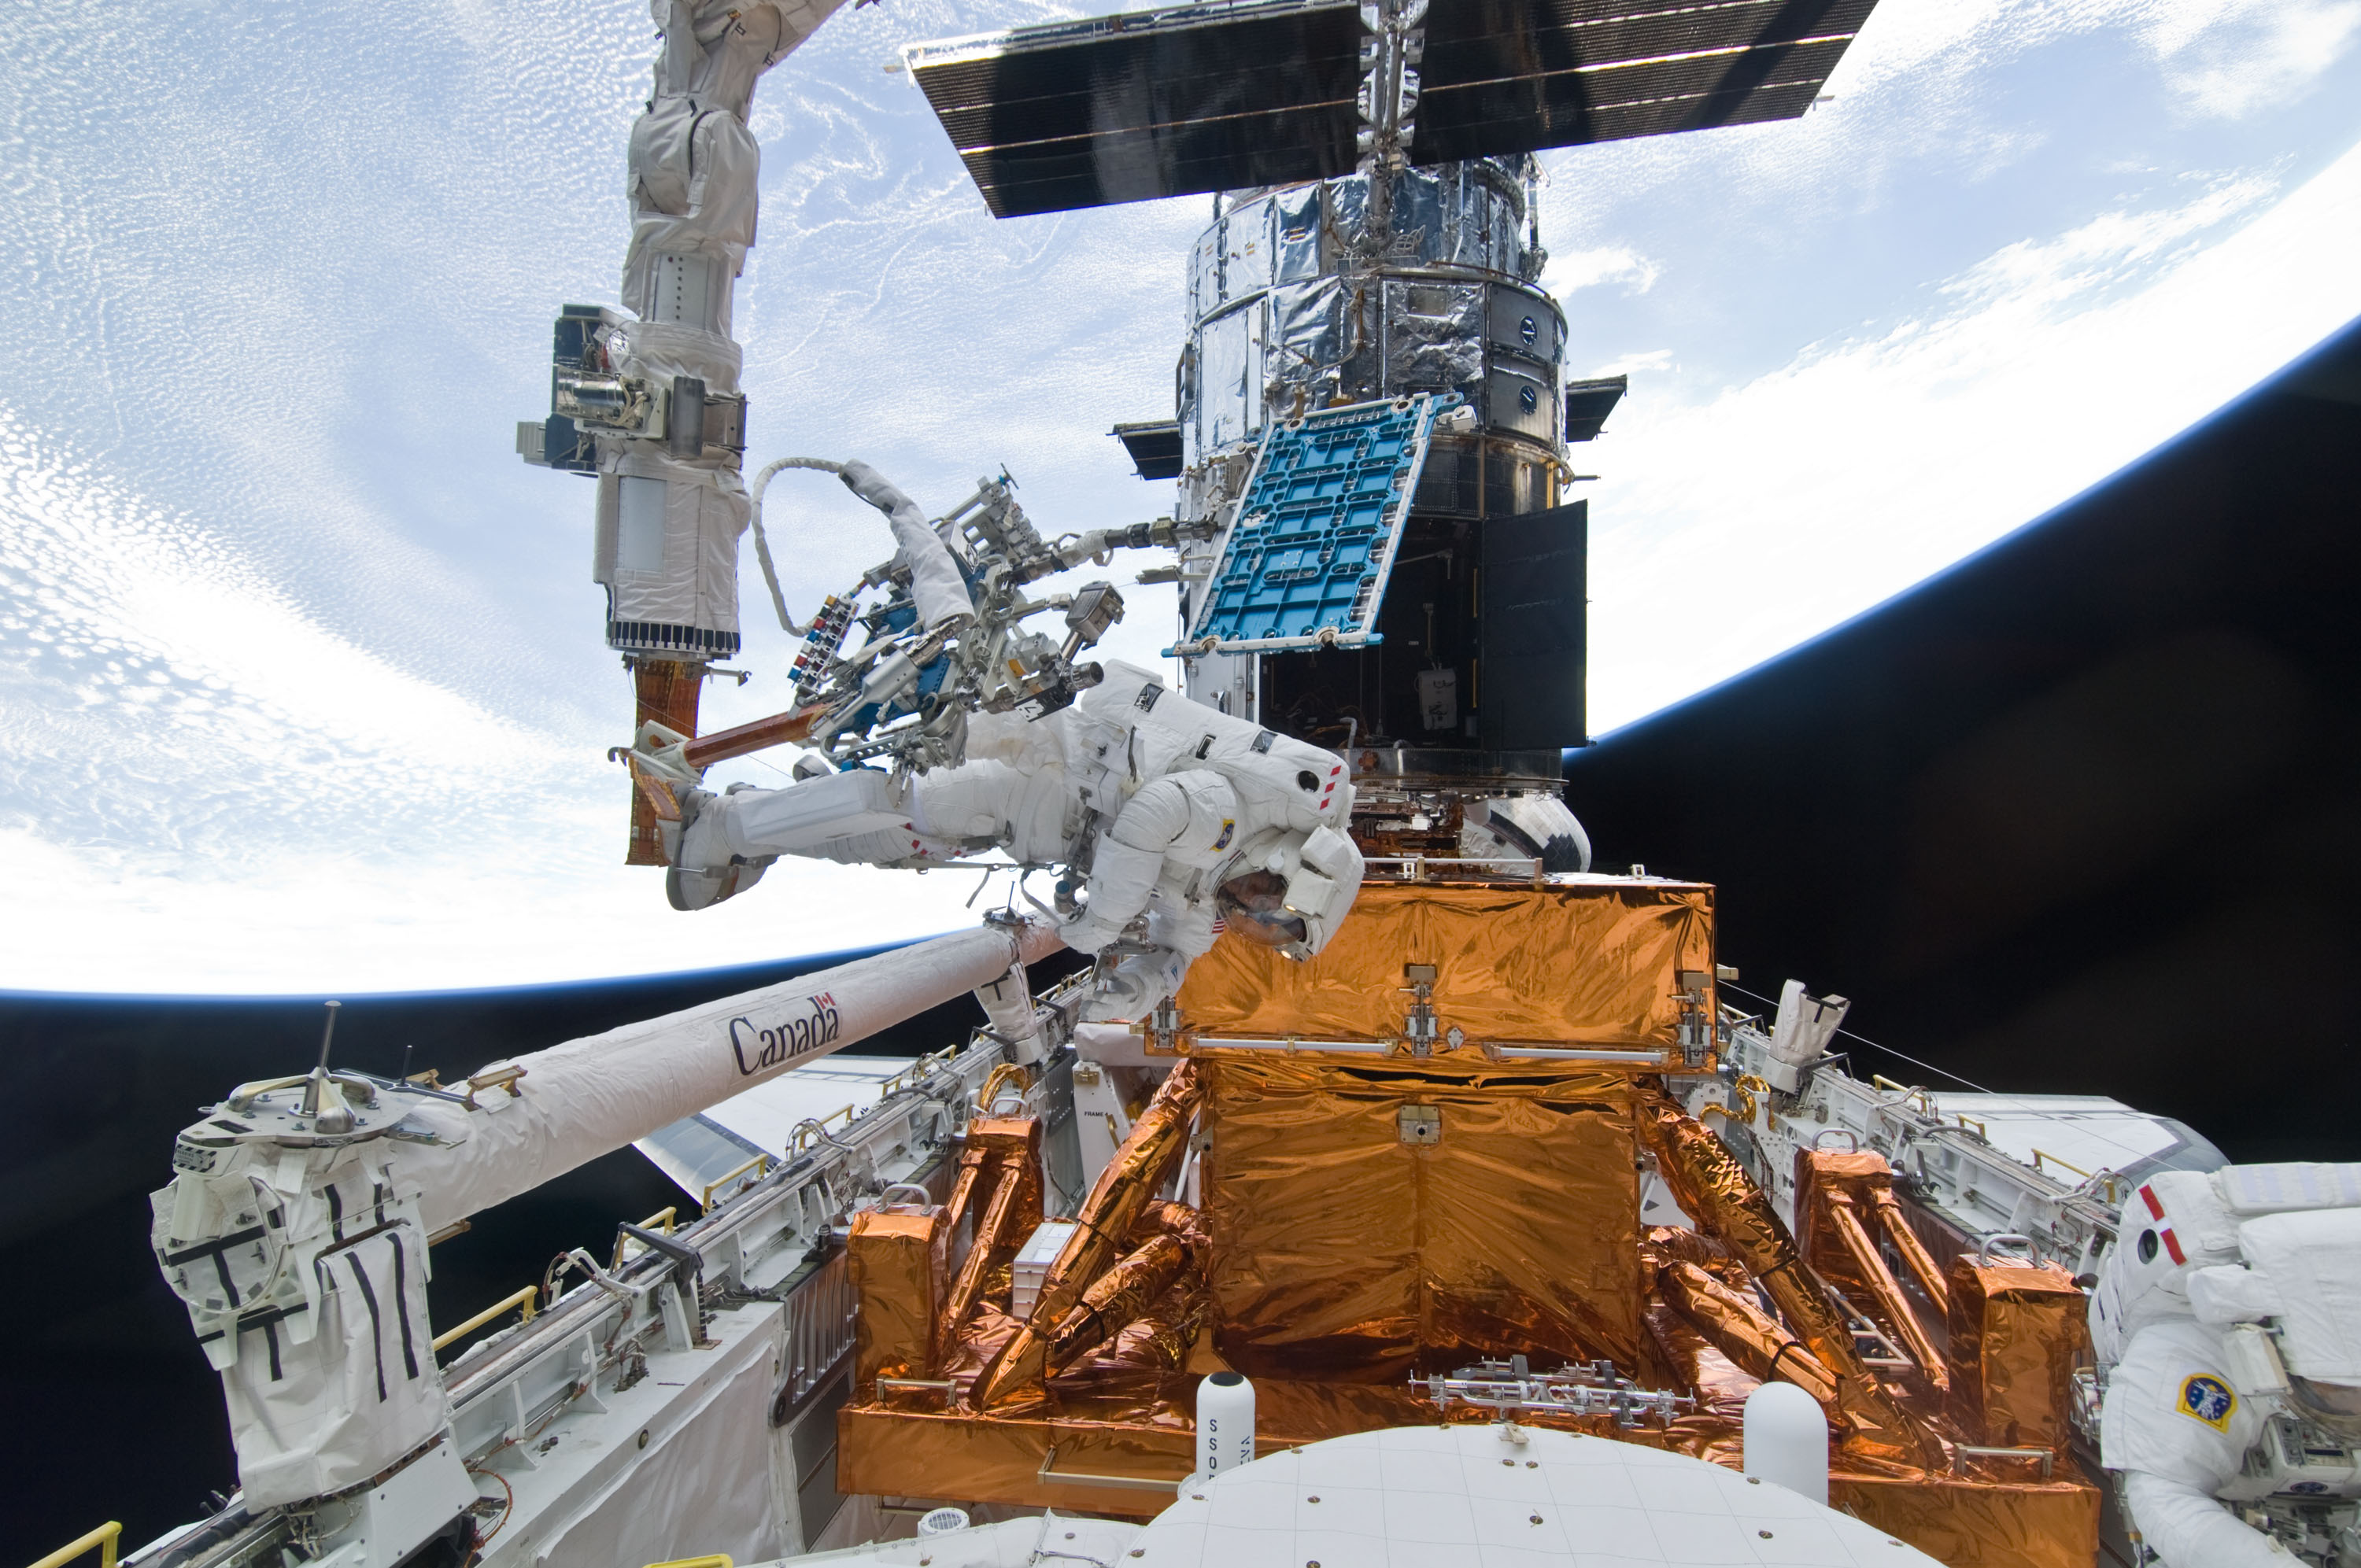 Un astronauta se mueve en el extremo de un brazo robótico del transbordador en el compartimento de carga con numerosas herramientas conectadas mientras otro trabaja en la parte inferior derecha.  Hubble y la Tierra están al fondo.